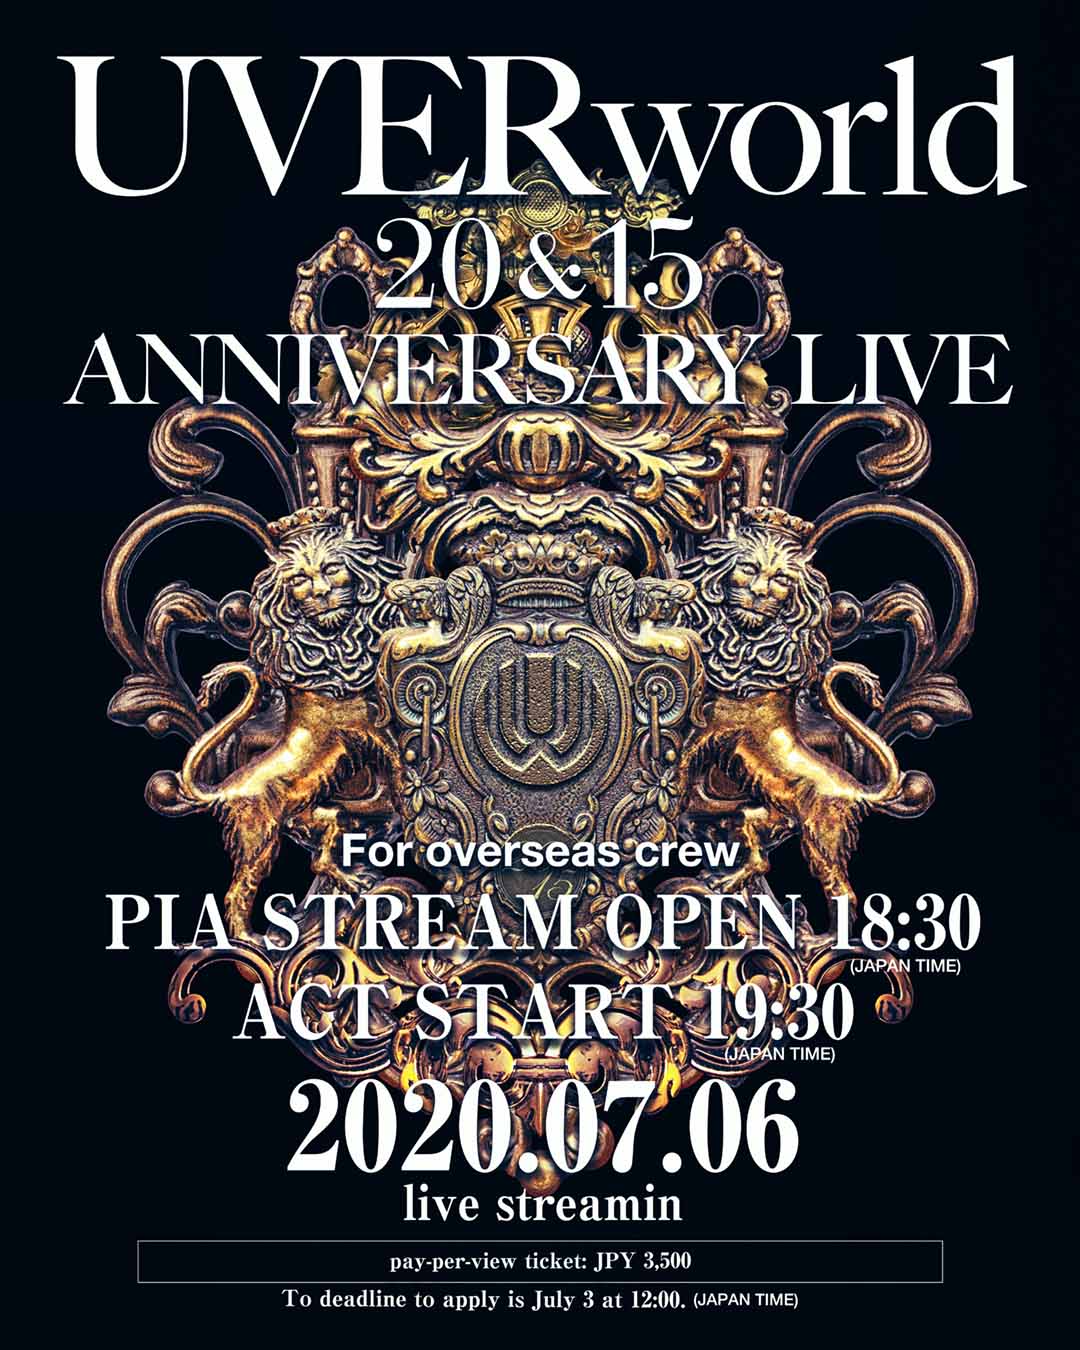 【海外向けチケット販売】UVERworld 20&15 ANNIVERSARY LIVE Buying Tickets From Overseas